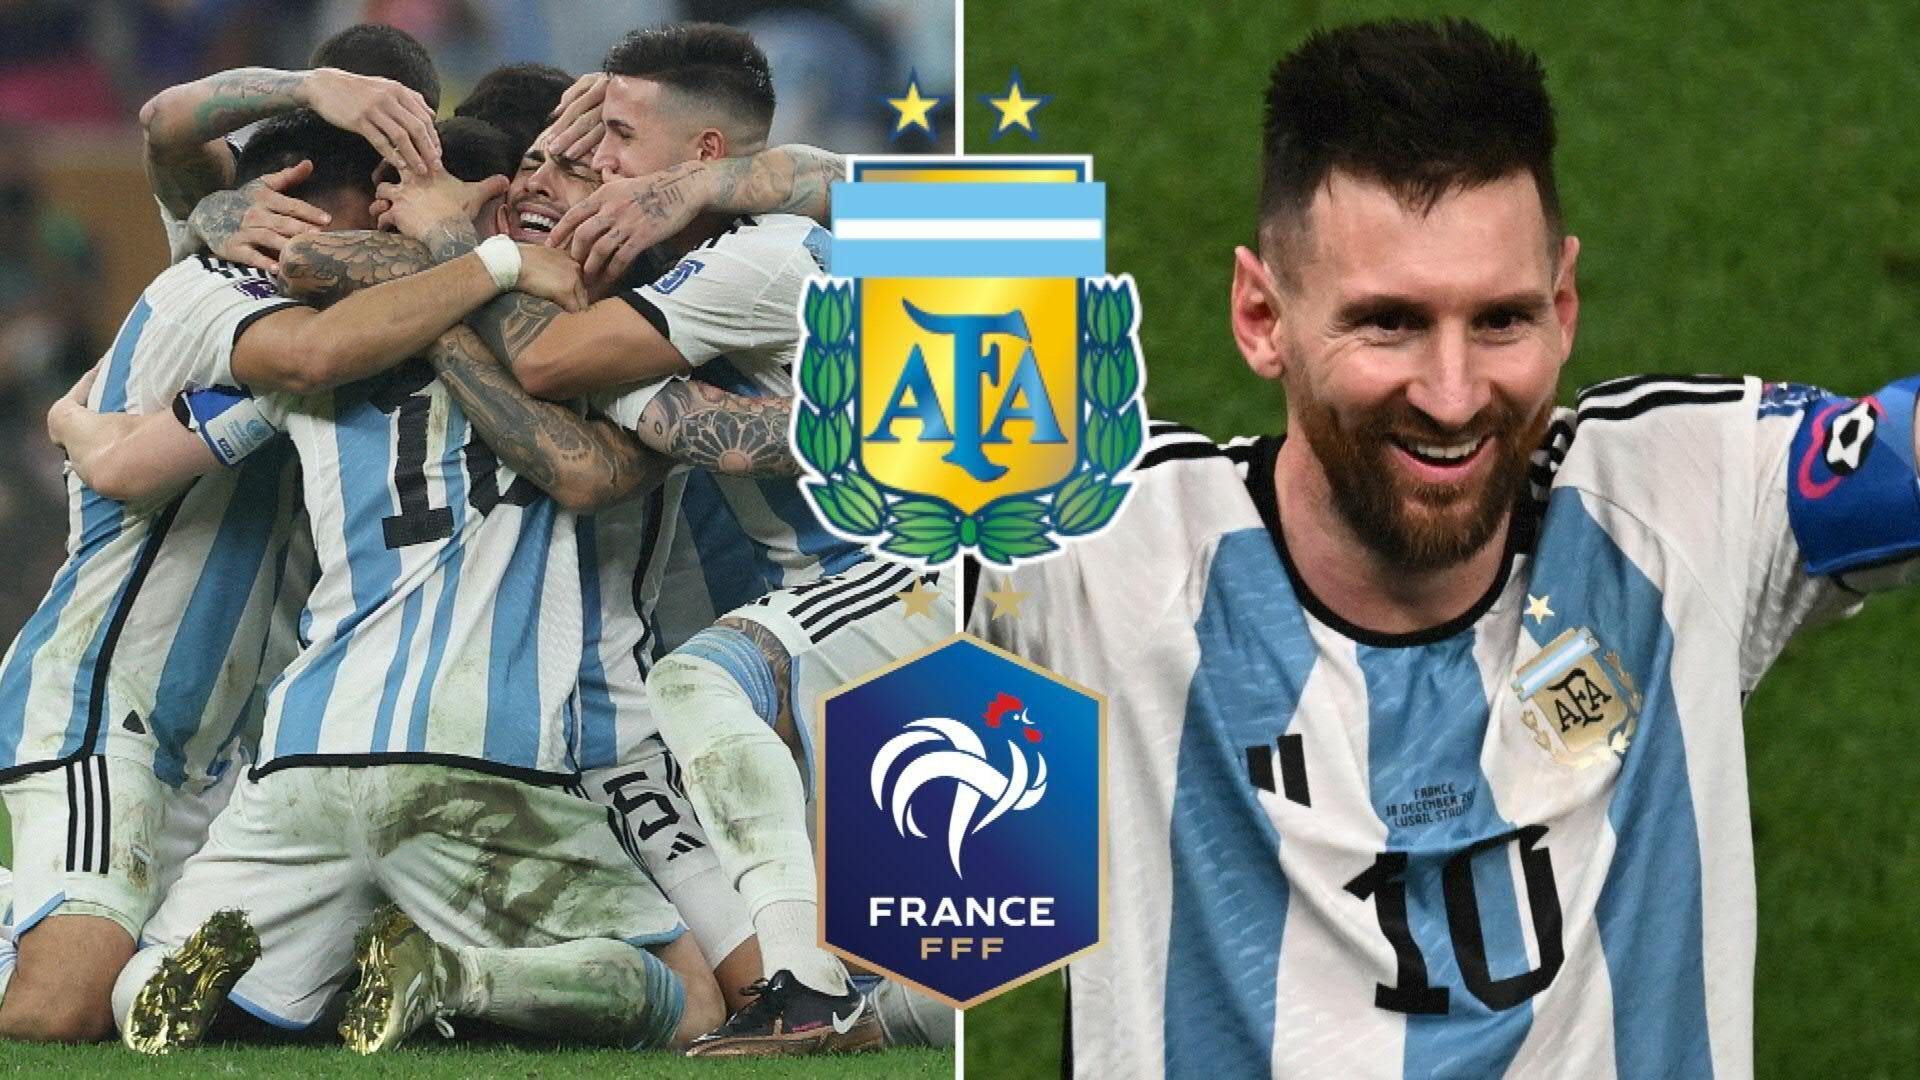 Endlich Weltmeister: Messi führt Argentinien zum WM-Titel